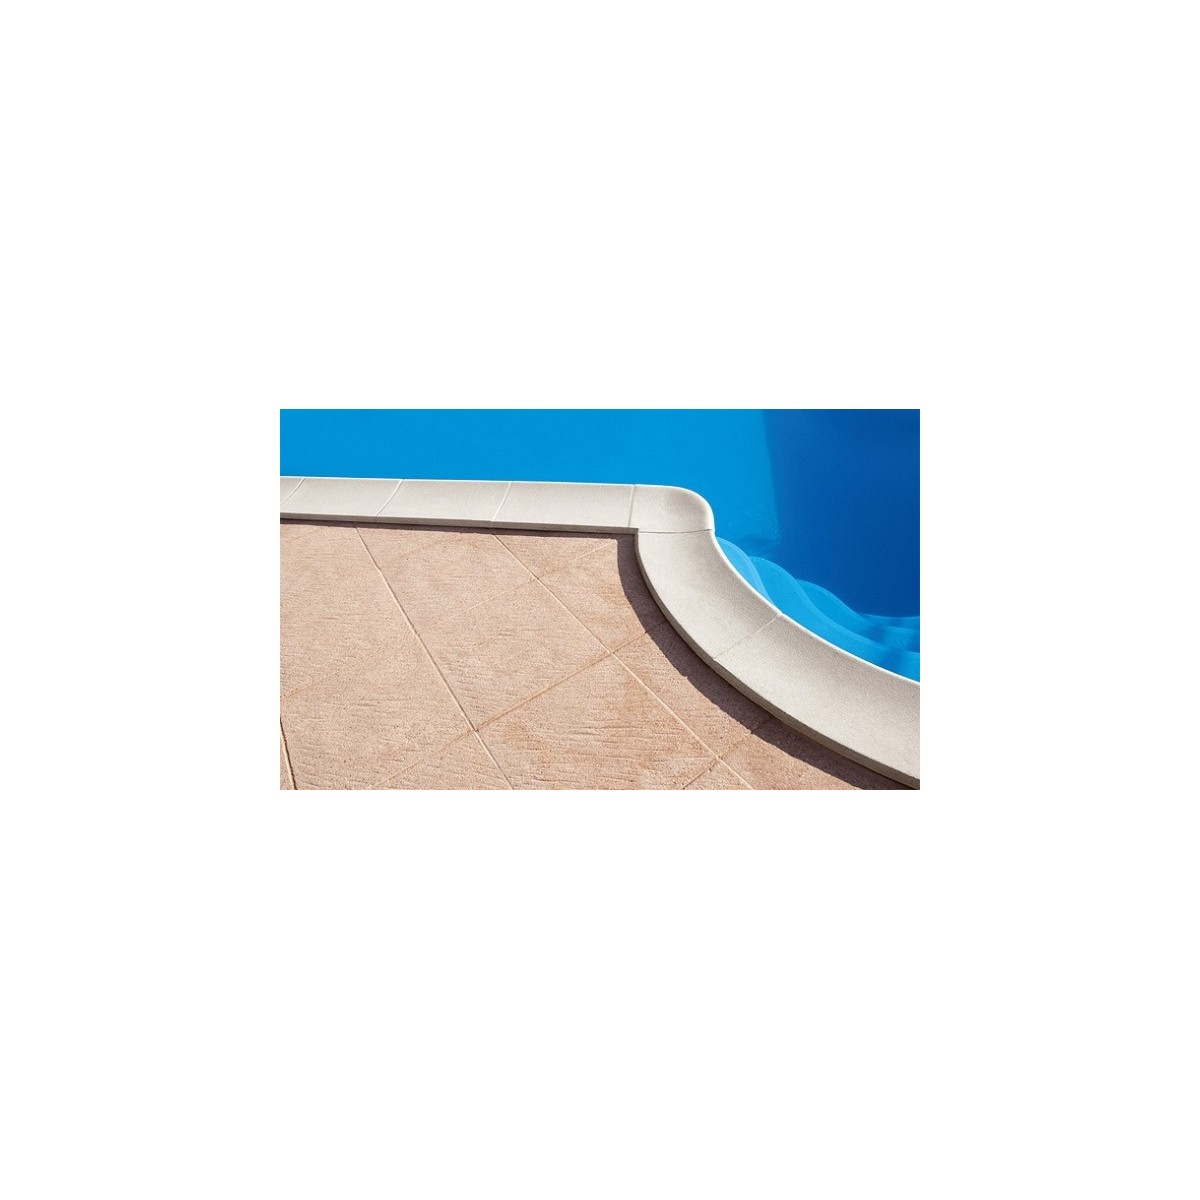 Bordo standard per piscina in pietra ricostruita 5x10 metri